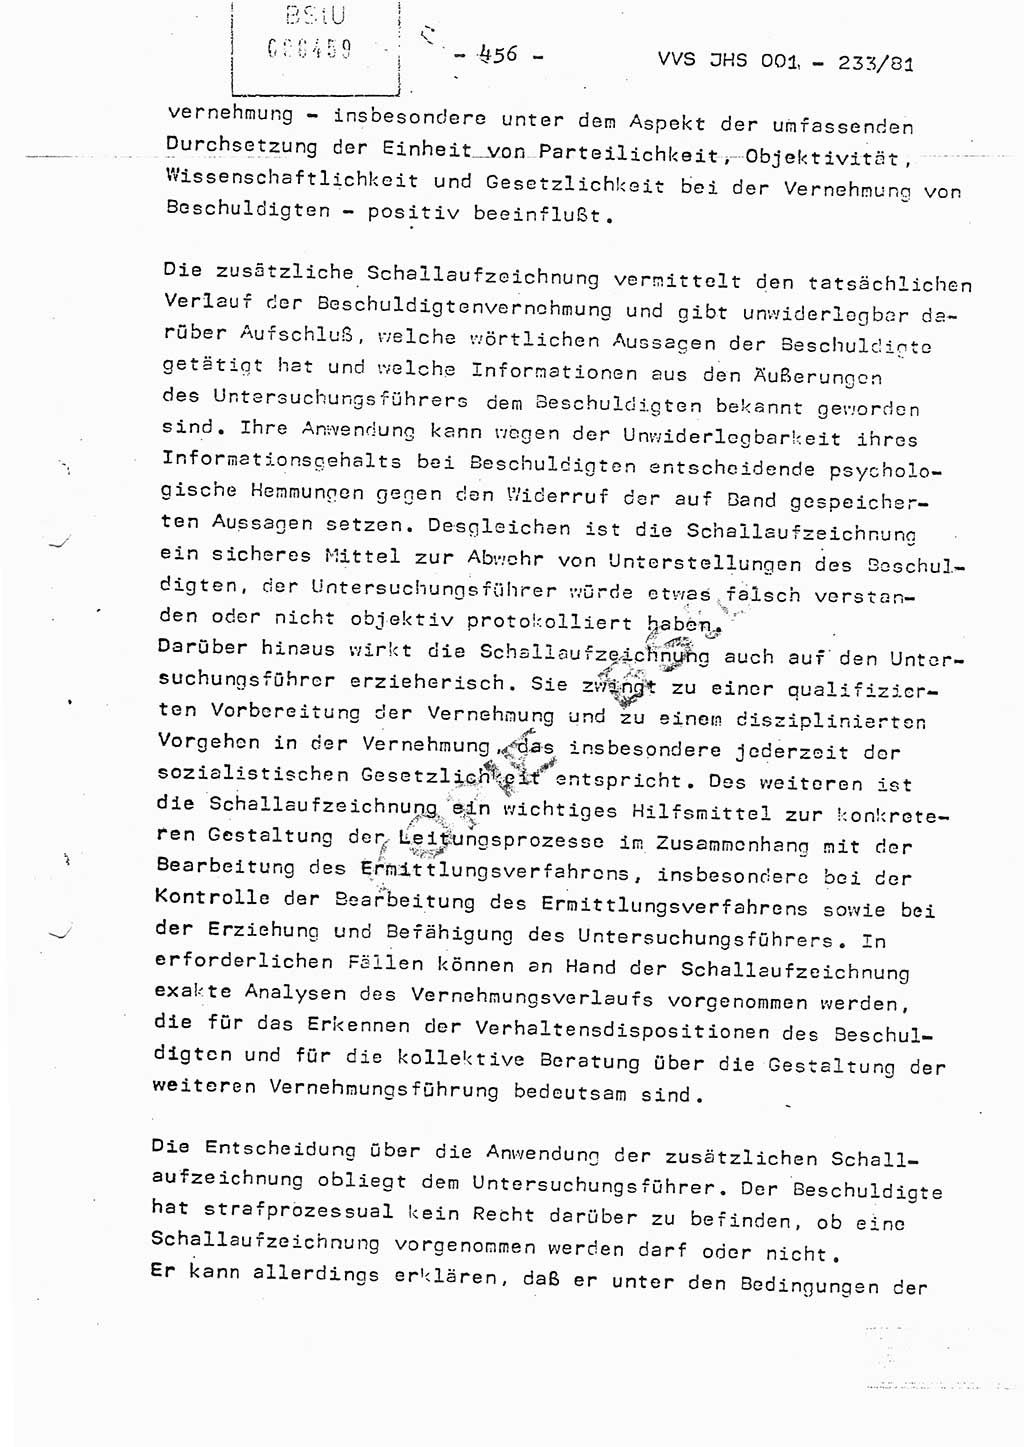 Dissertation Oberstleutnant Horst Zank (JHS), Oberstleutnant Dr. Karl-Heinz Knoblauch (JHS), Oberstleutnant Gustav-Adolf Kowalewski (HA Ⅸ), Oberstleutnant Wolfgang Plötner (HA Ⅸ), Ministerium für Staatssicherheit (MfS) [Deutsche Demokratische Republik (DDR)], Juristische Hochschule (JHS), Vertrauliche Verschlußsache (VVS) o001-233/81, Potsdam 1981, Blatt 456 (Diss. MfS DDR JHS VVS o001-233/81 1981, Bl. 456)